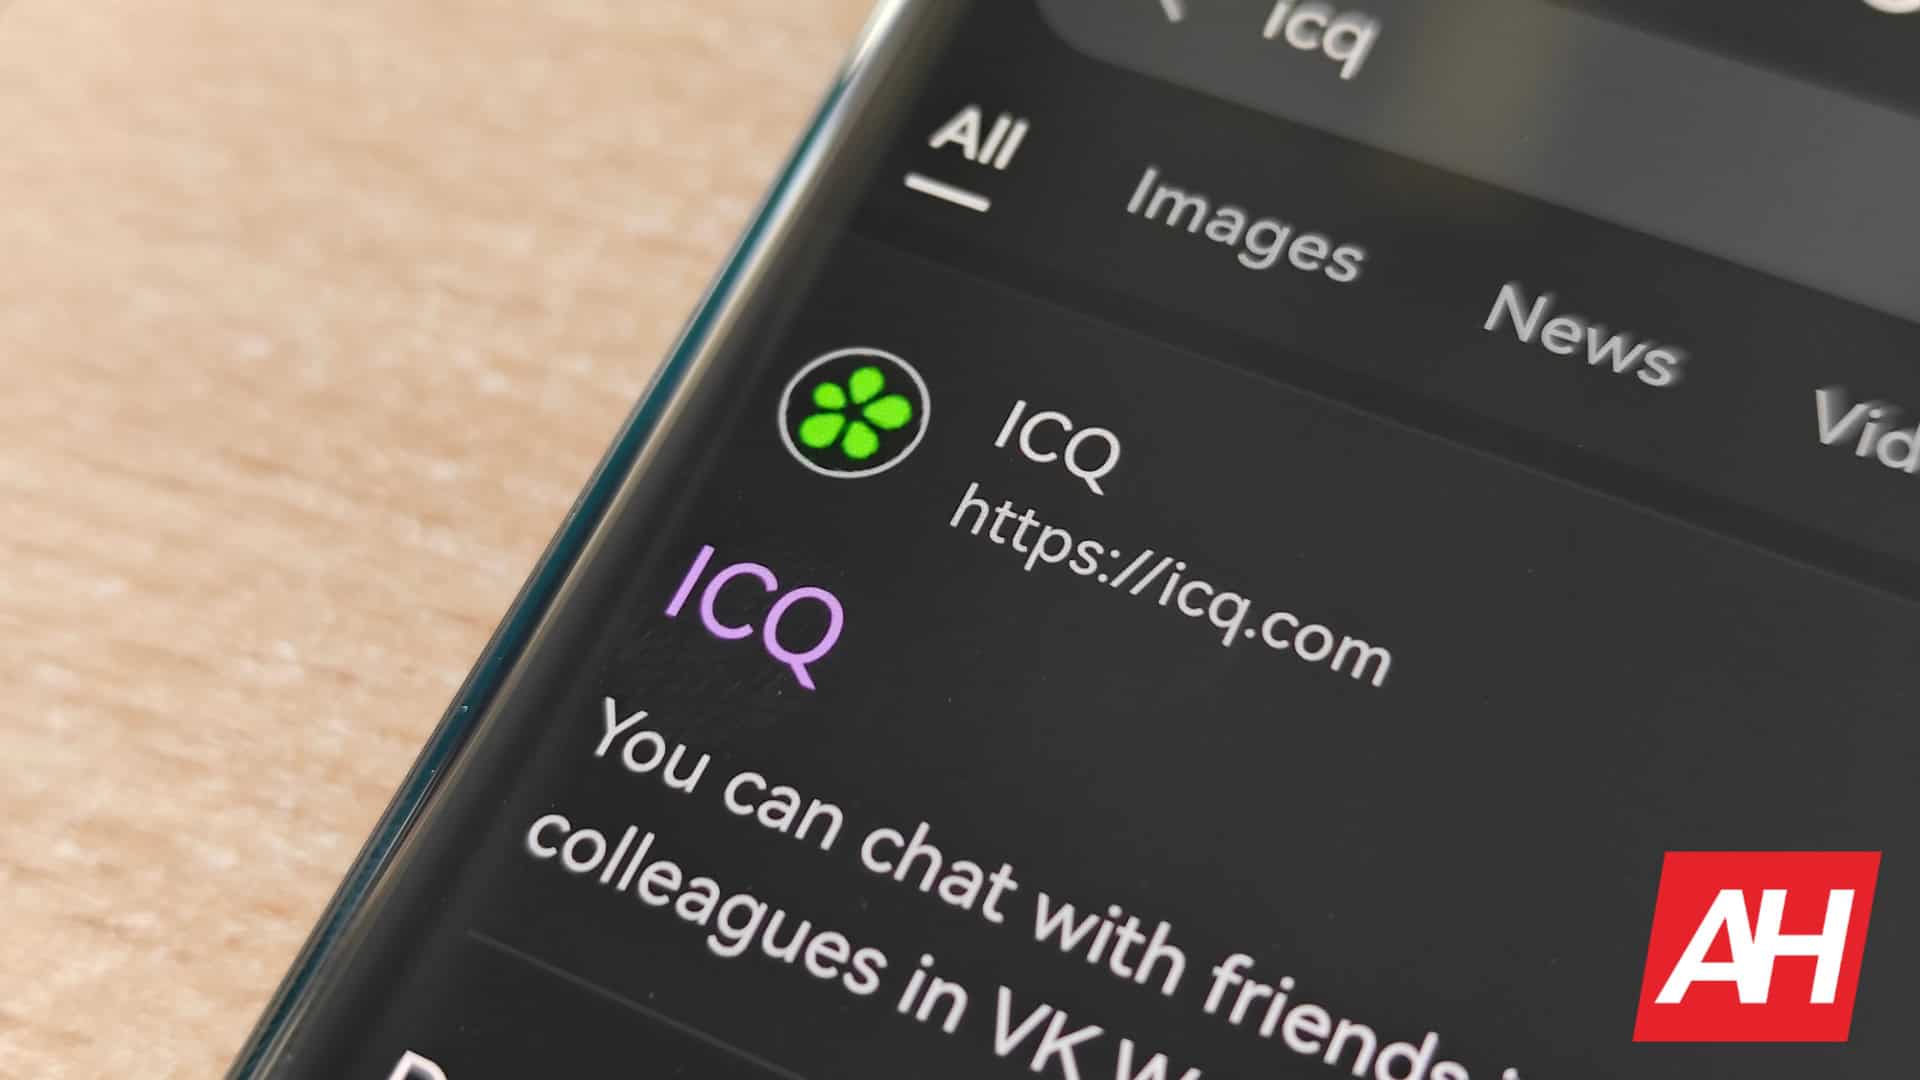 La plataforma de mensajería ICQ se despide después de 28 años